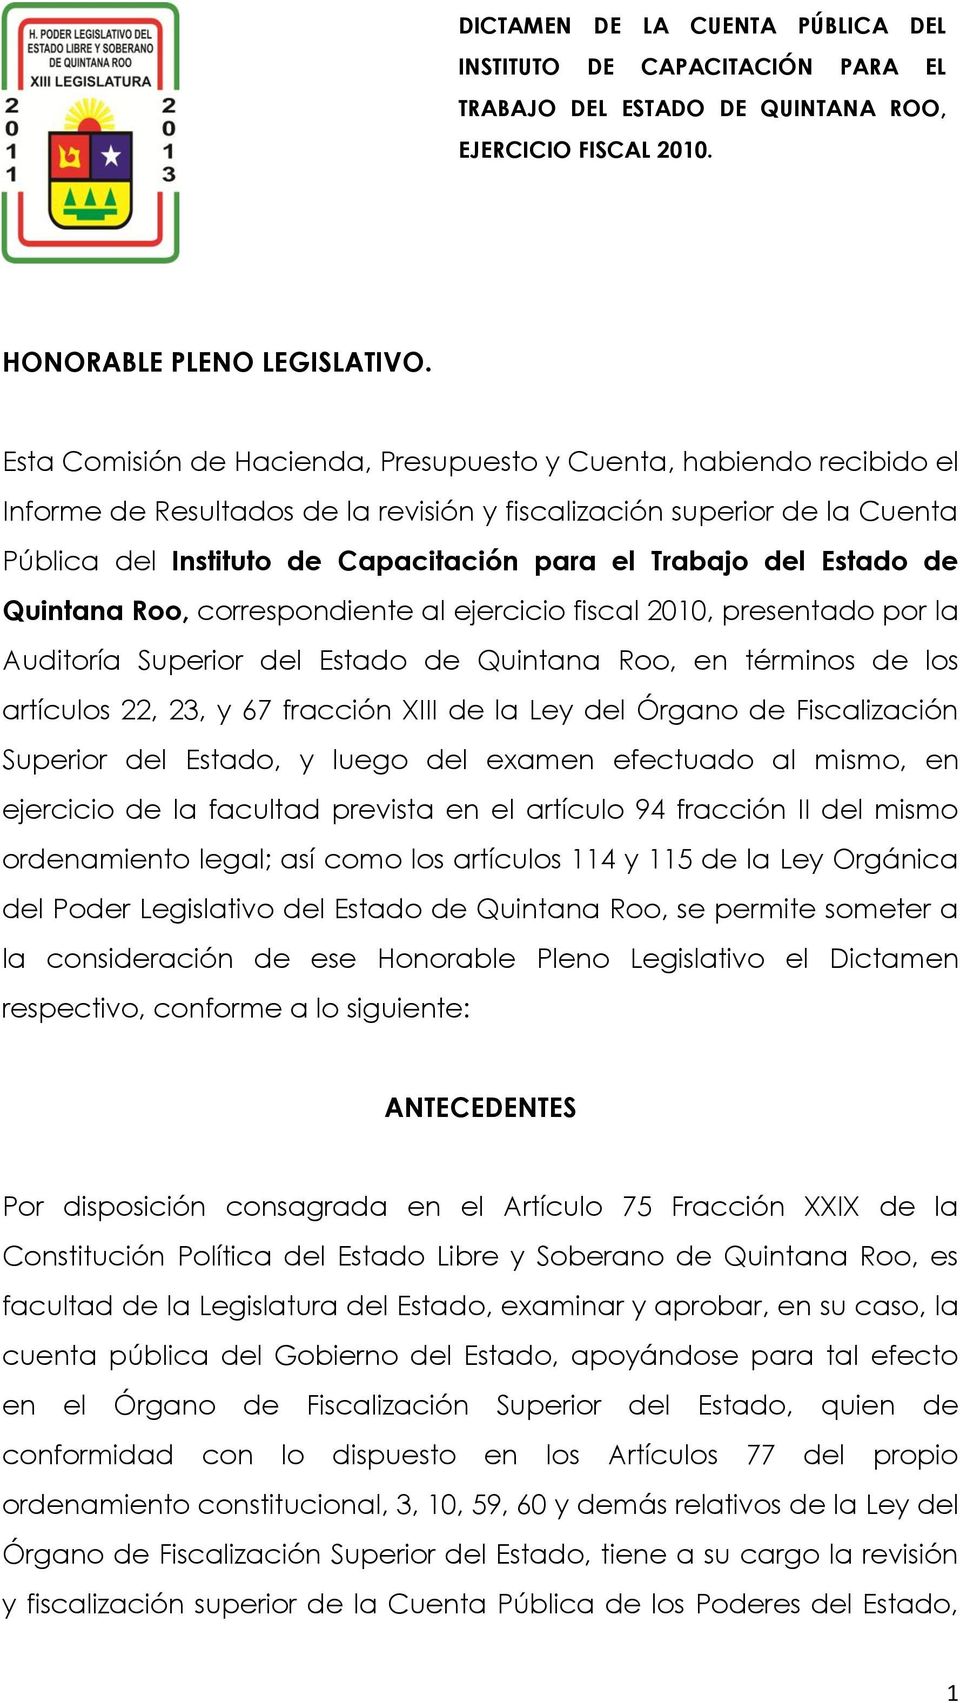 del Estado de Quintana Roo, correspondiente al ejercicio fiscal 2010, presentado por la Auditoría Superior del Estado de Quintana Roo, en términos de los artículos 22, 23, y 67 fracción XIII de la